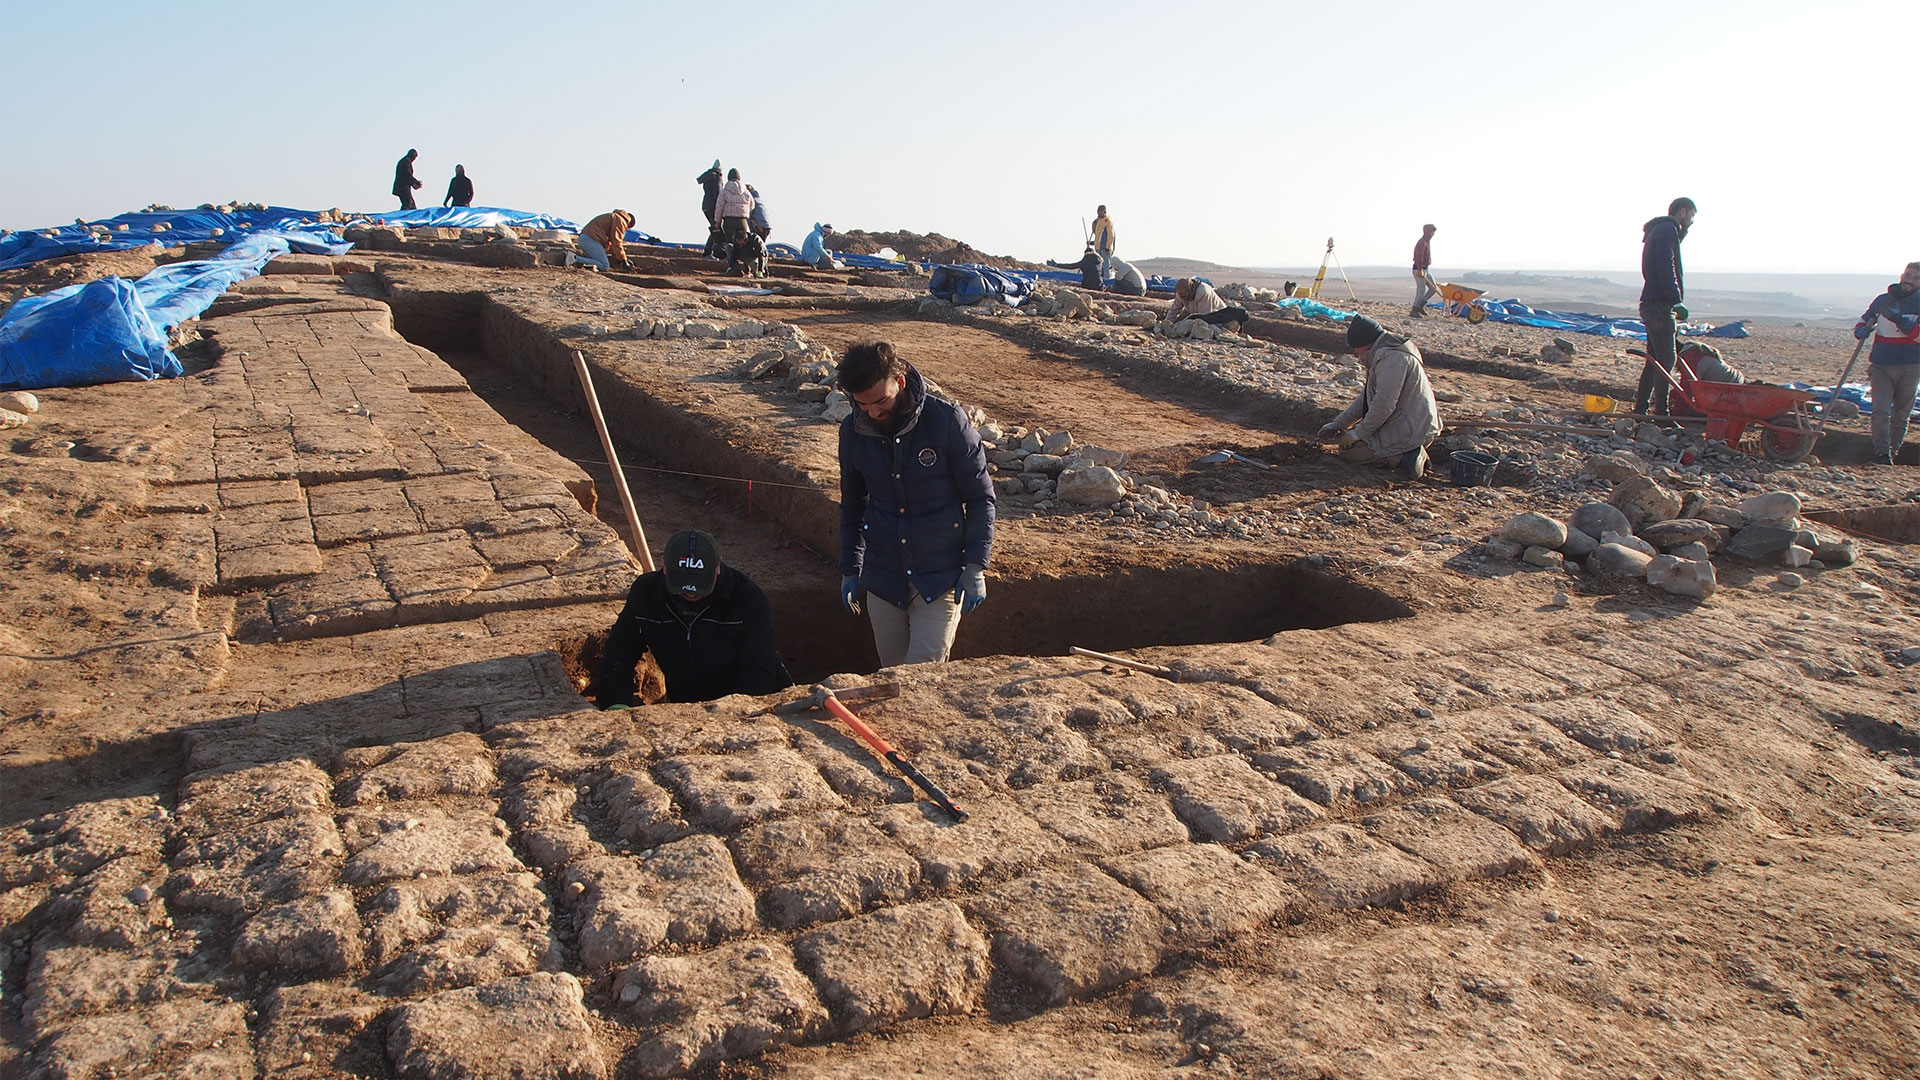 El descenso del caudal del Éufrates ha destapado en el norte de Siria varios sitios arqueológicos, incluidos algunos cementerios, pertenecientes a periodos históricos que se remontan hasta hace 11 milenios 